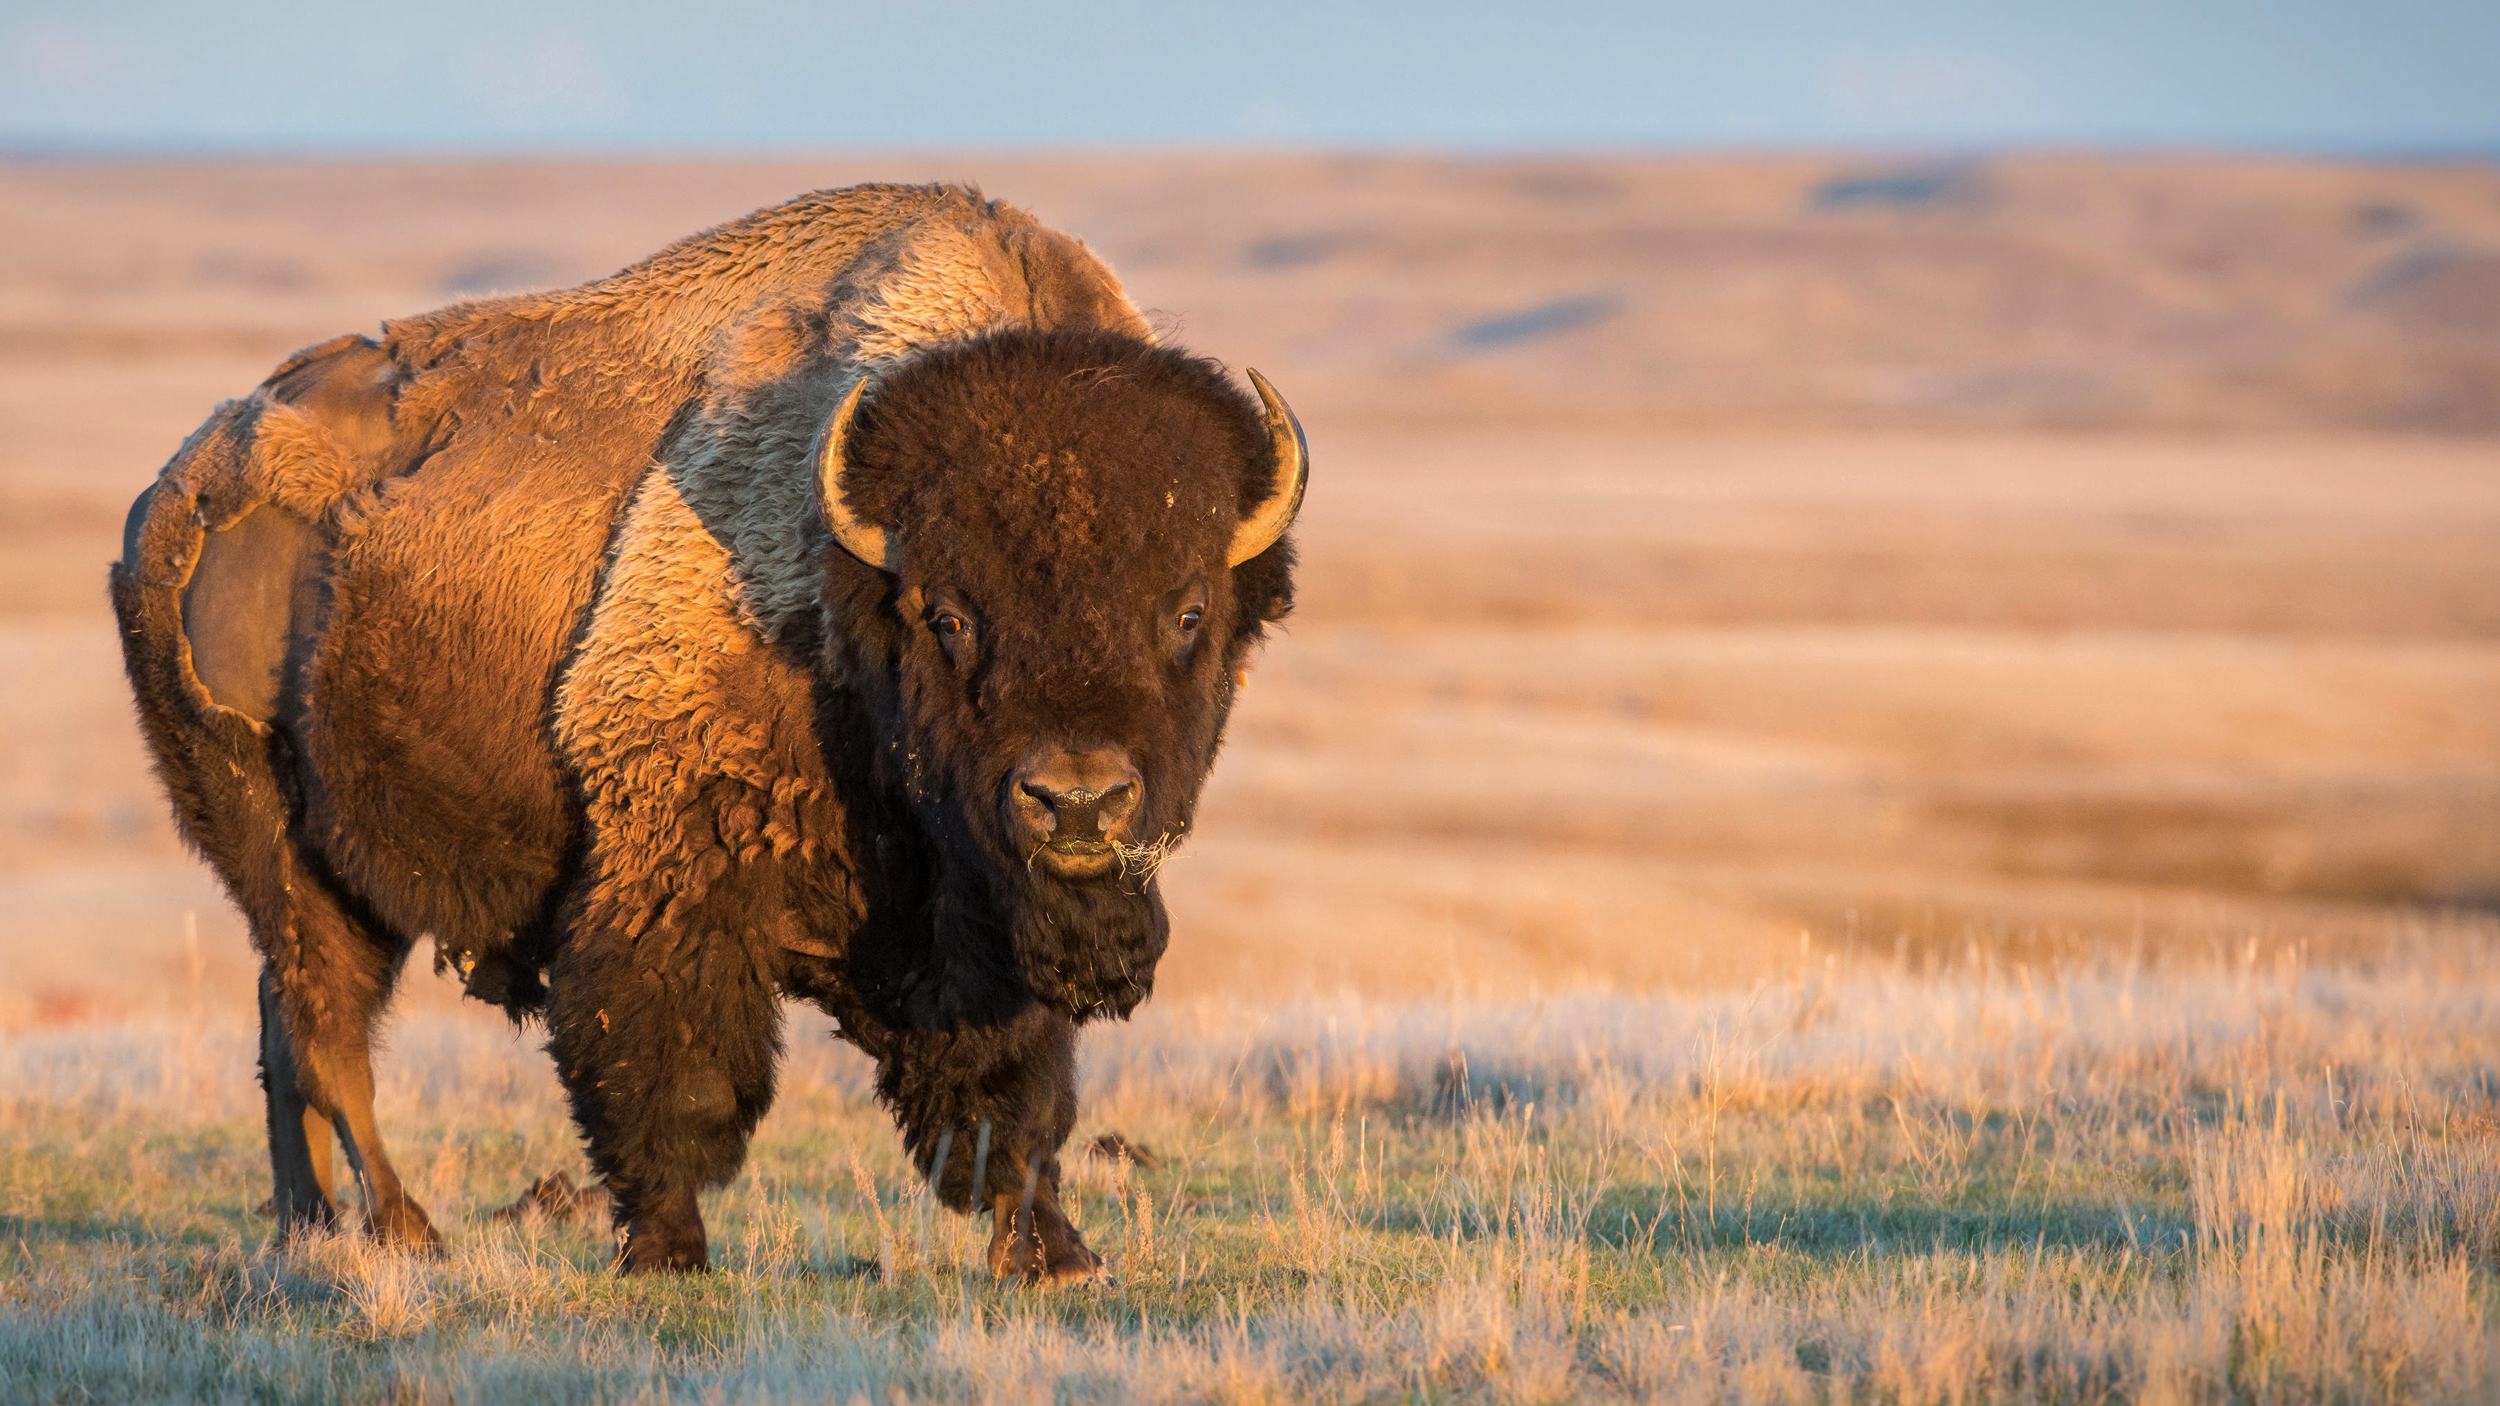 saskatchewan's grasslands bison prairie plains